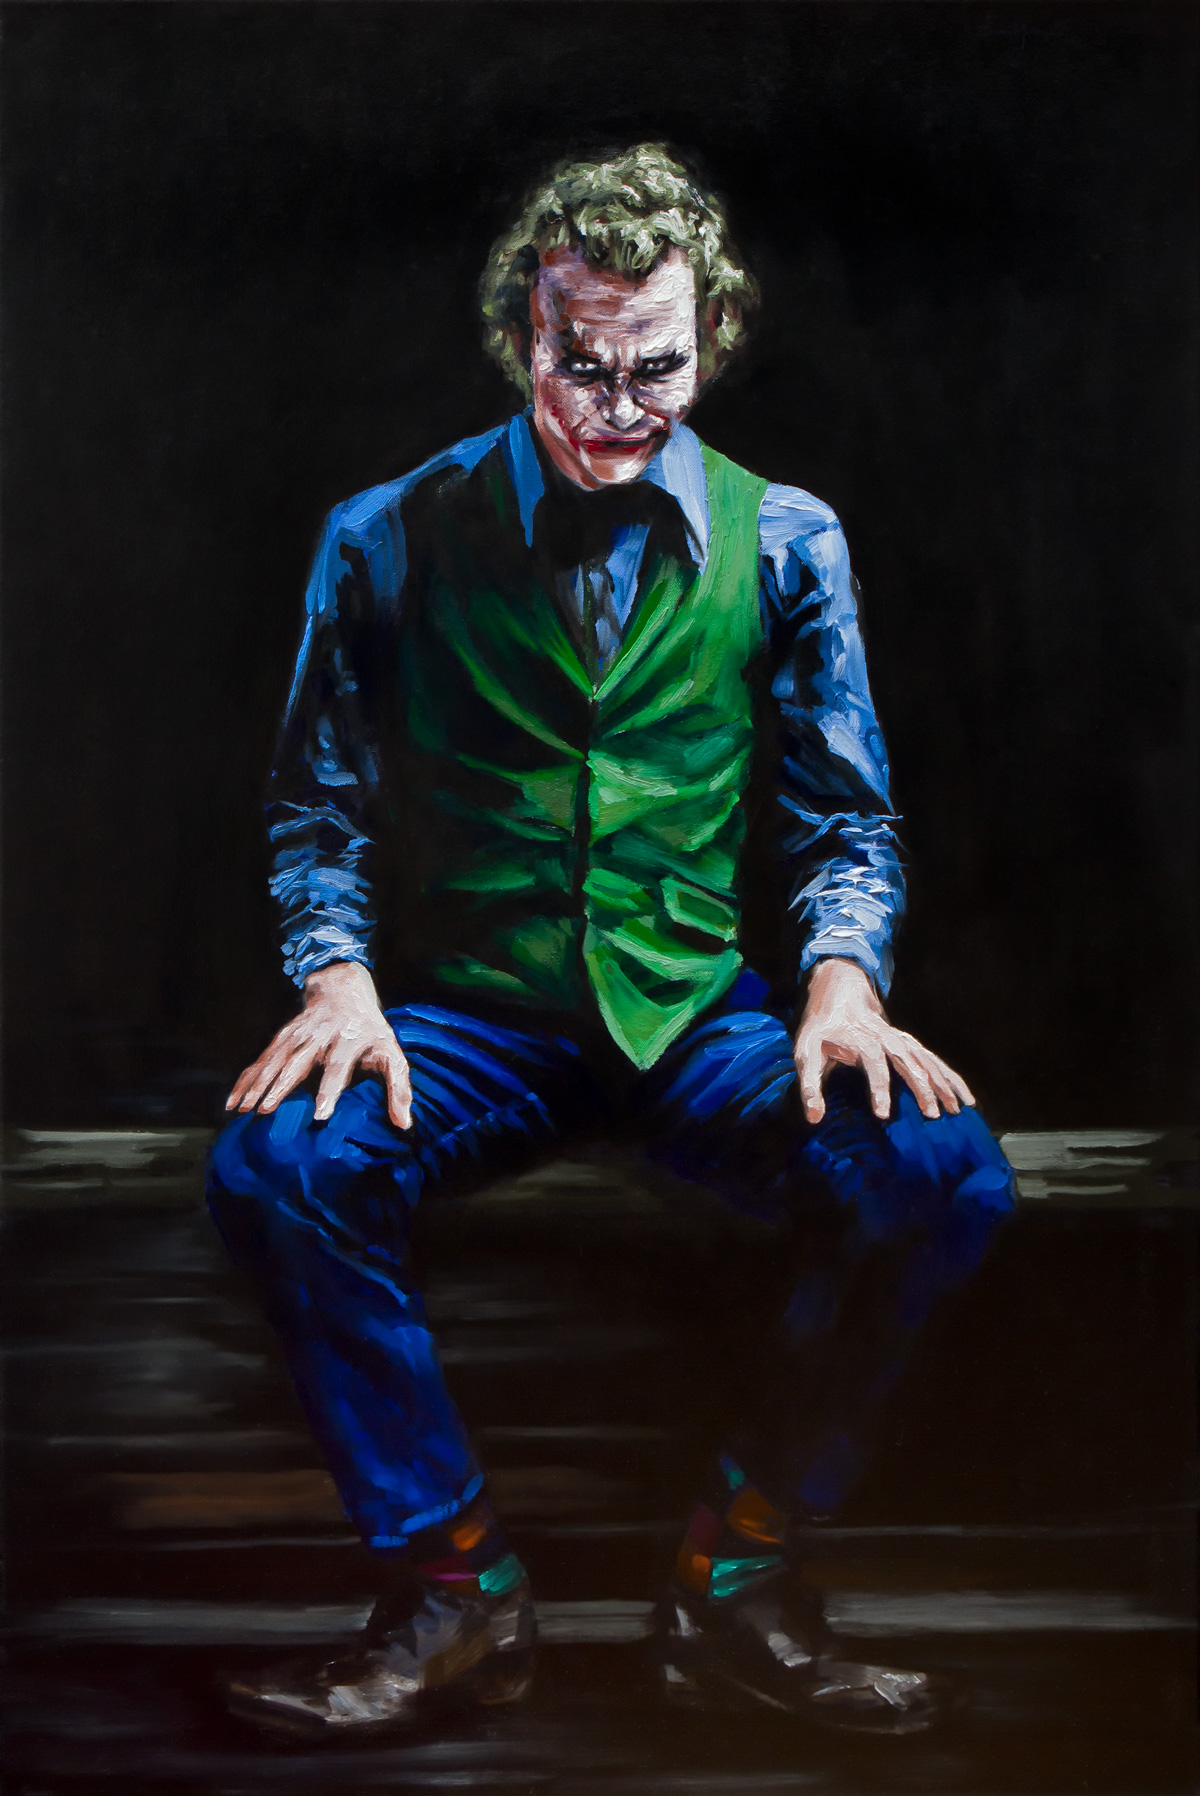 The Joker © Dean Miller